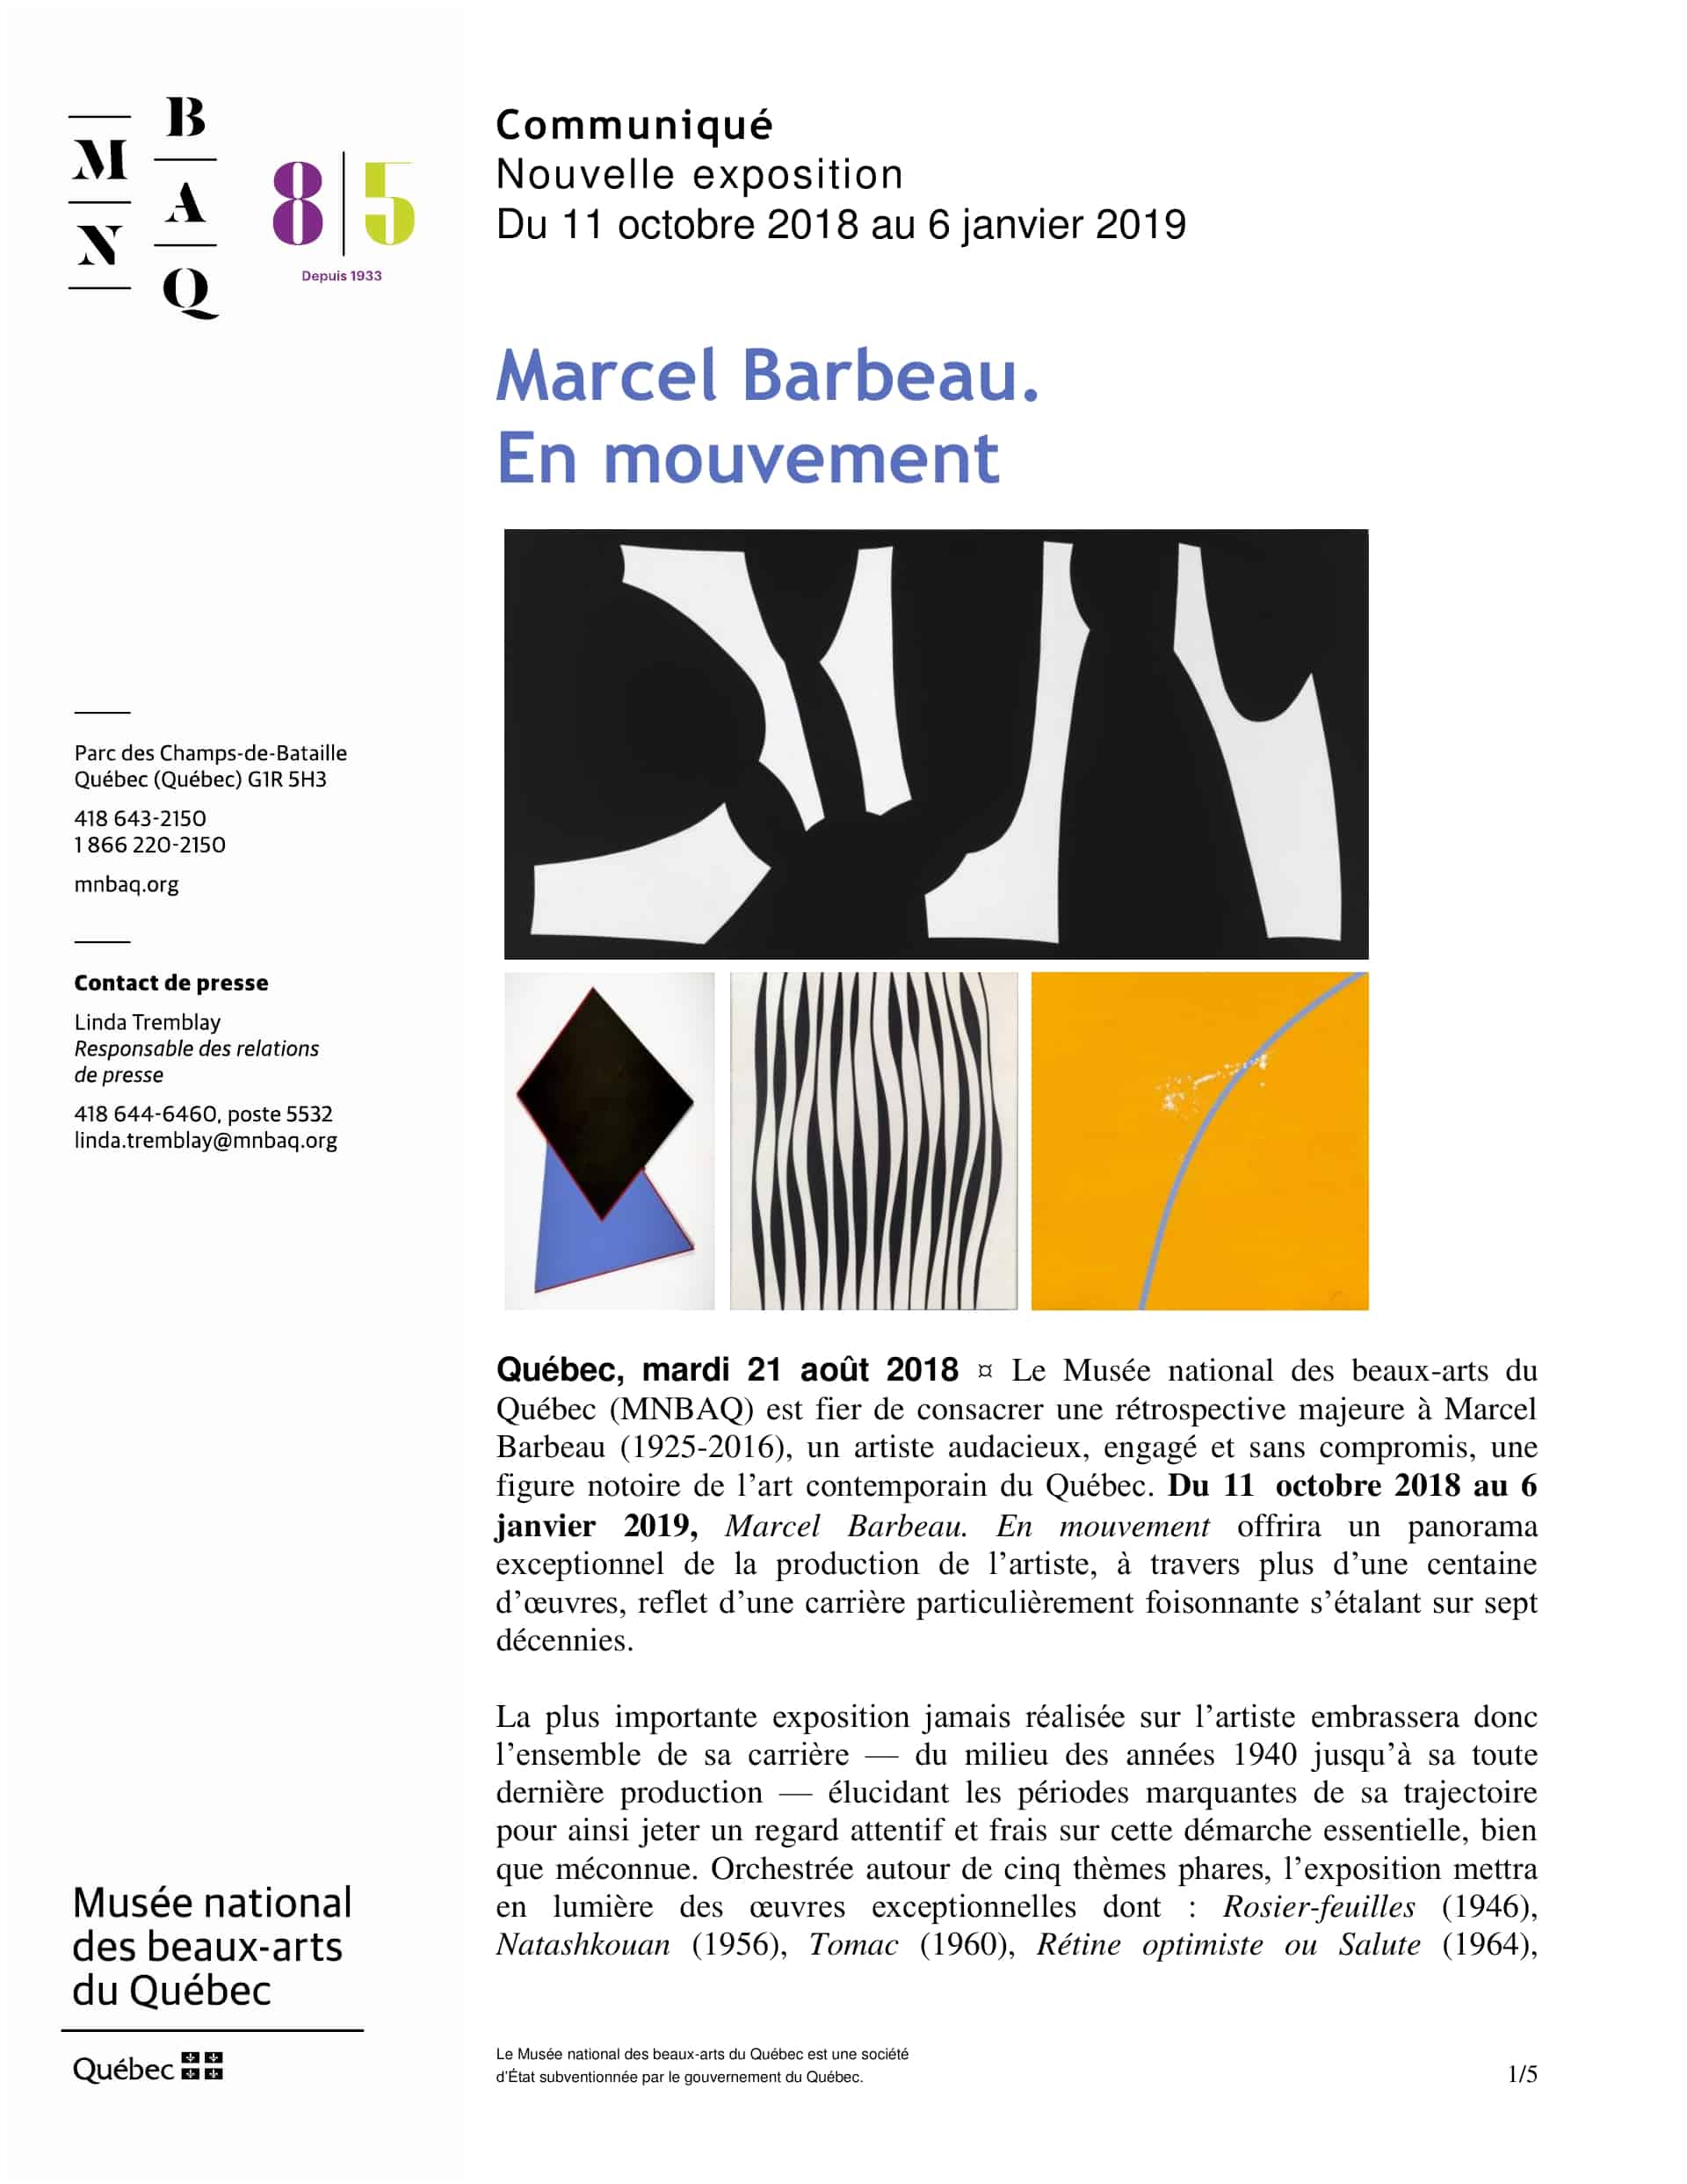 Exposition majeure, la plus importante jamais réalisée sur Marcel Barbeau au Musée National des beaux-art du Québec dès le 11 octobre